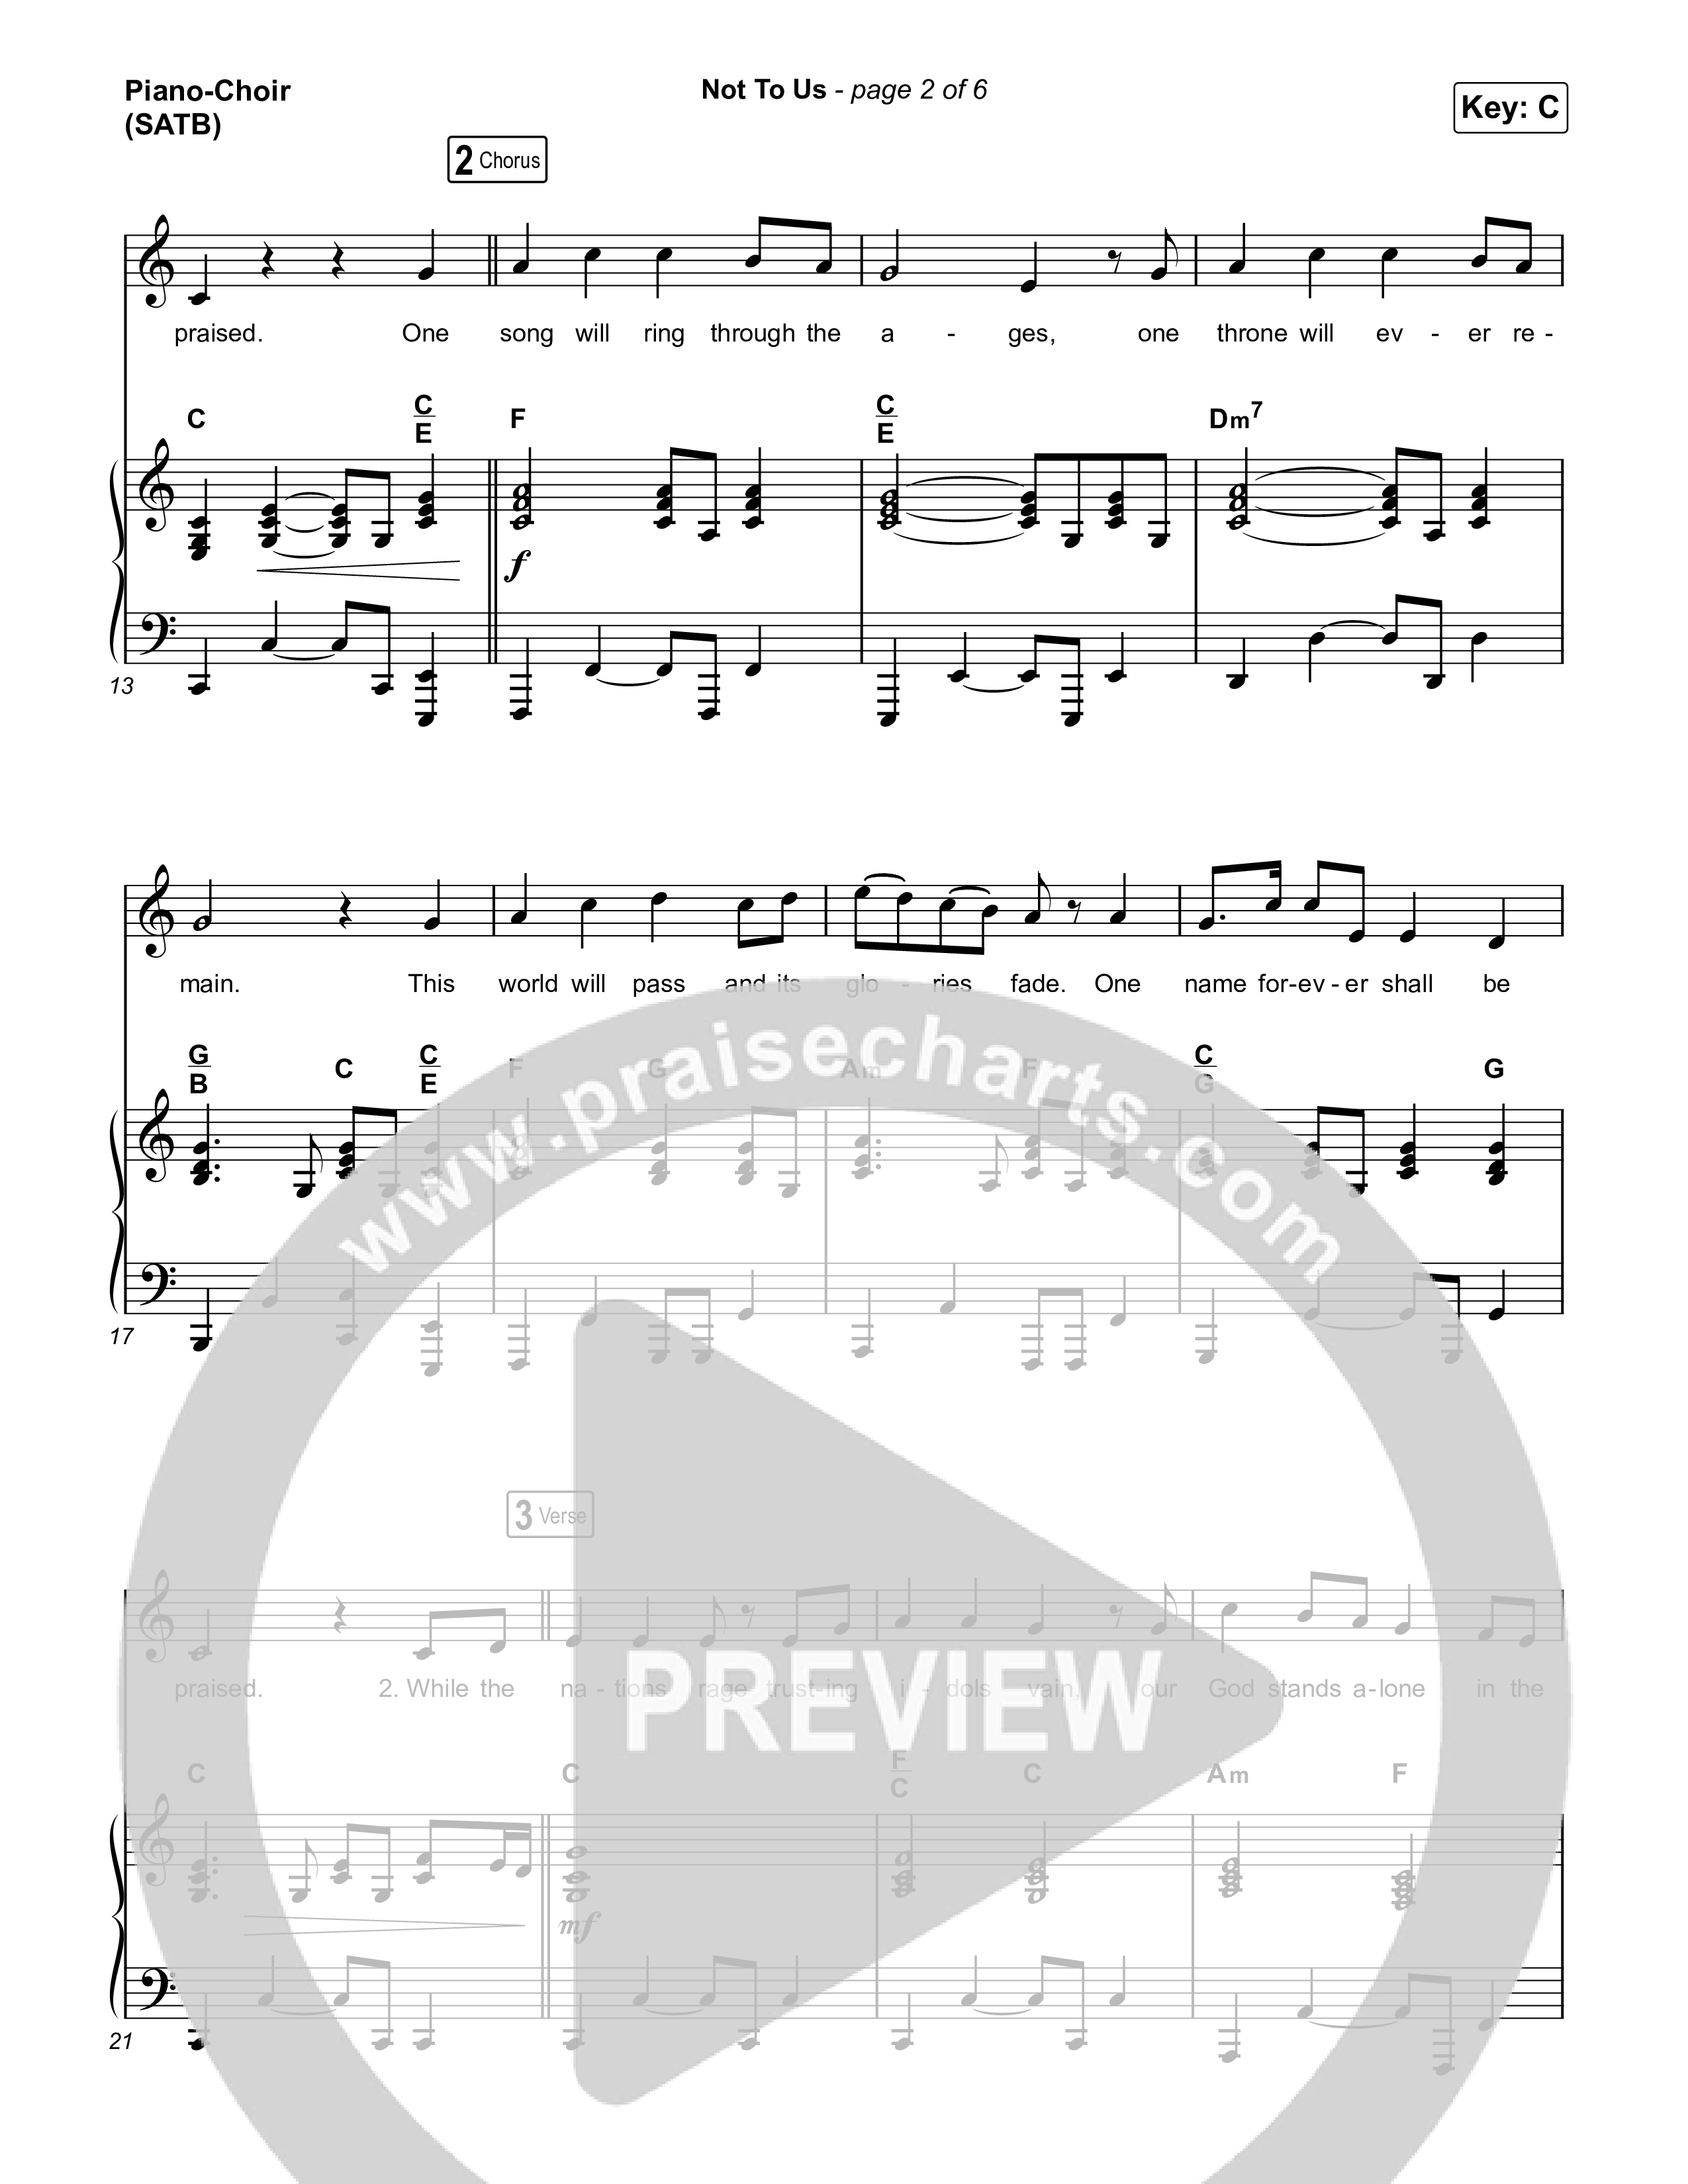 Not to Us (One Name Forever Shall Be Praised) Piano/Vocal (SATB) (Matt Papa / Matt Boswell / Matt Redman)